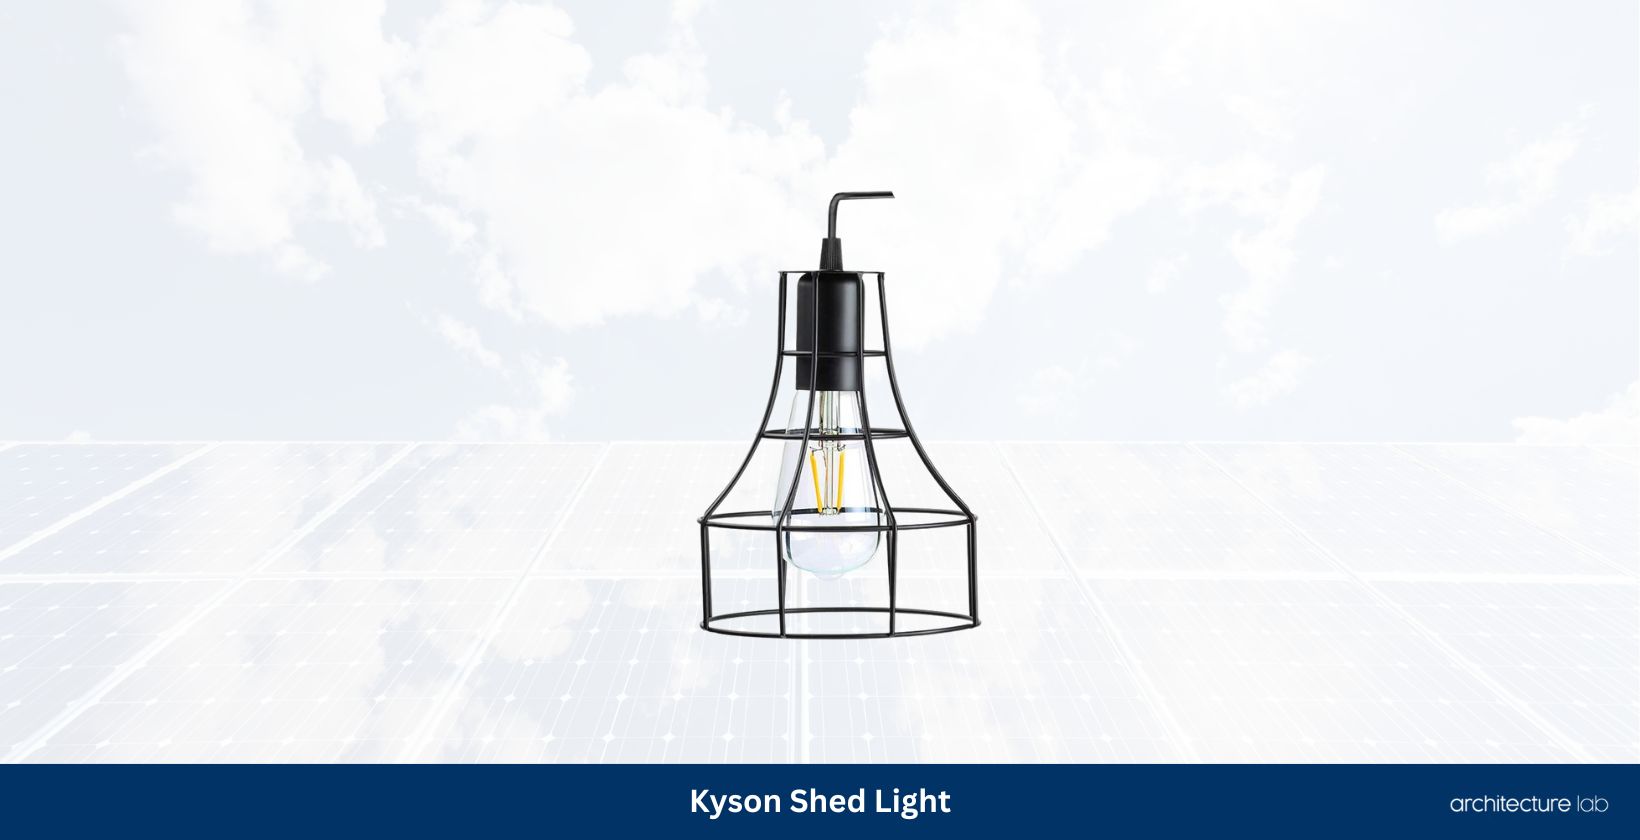 Kyson shed light